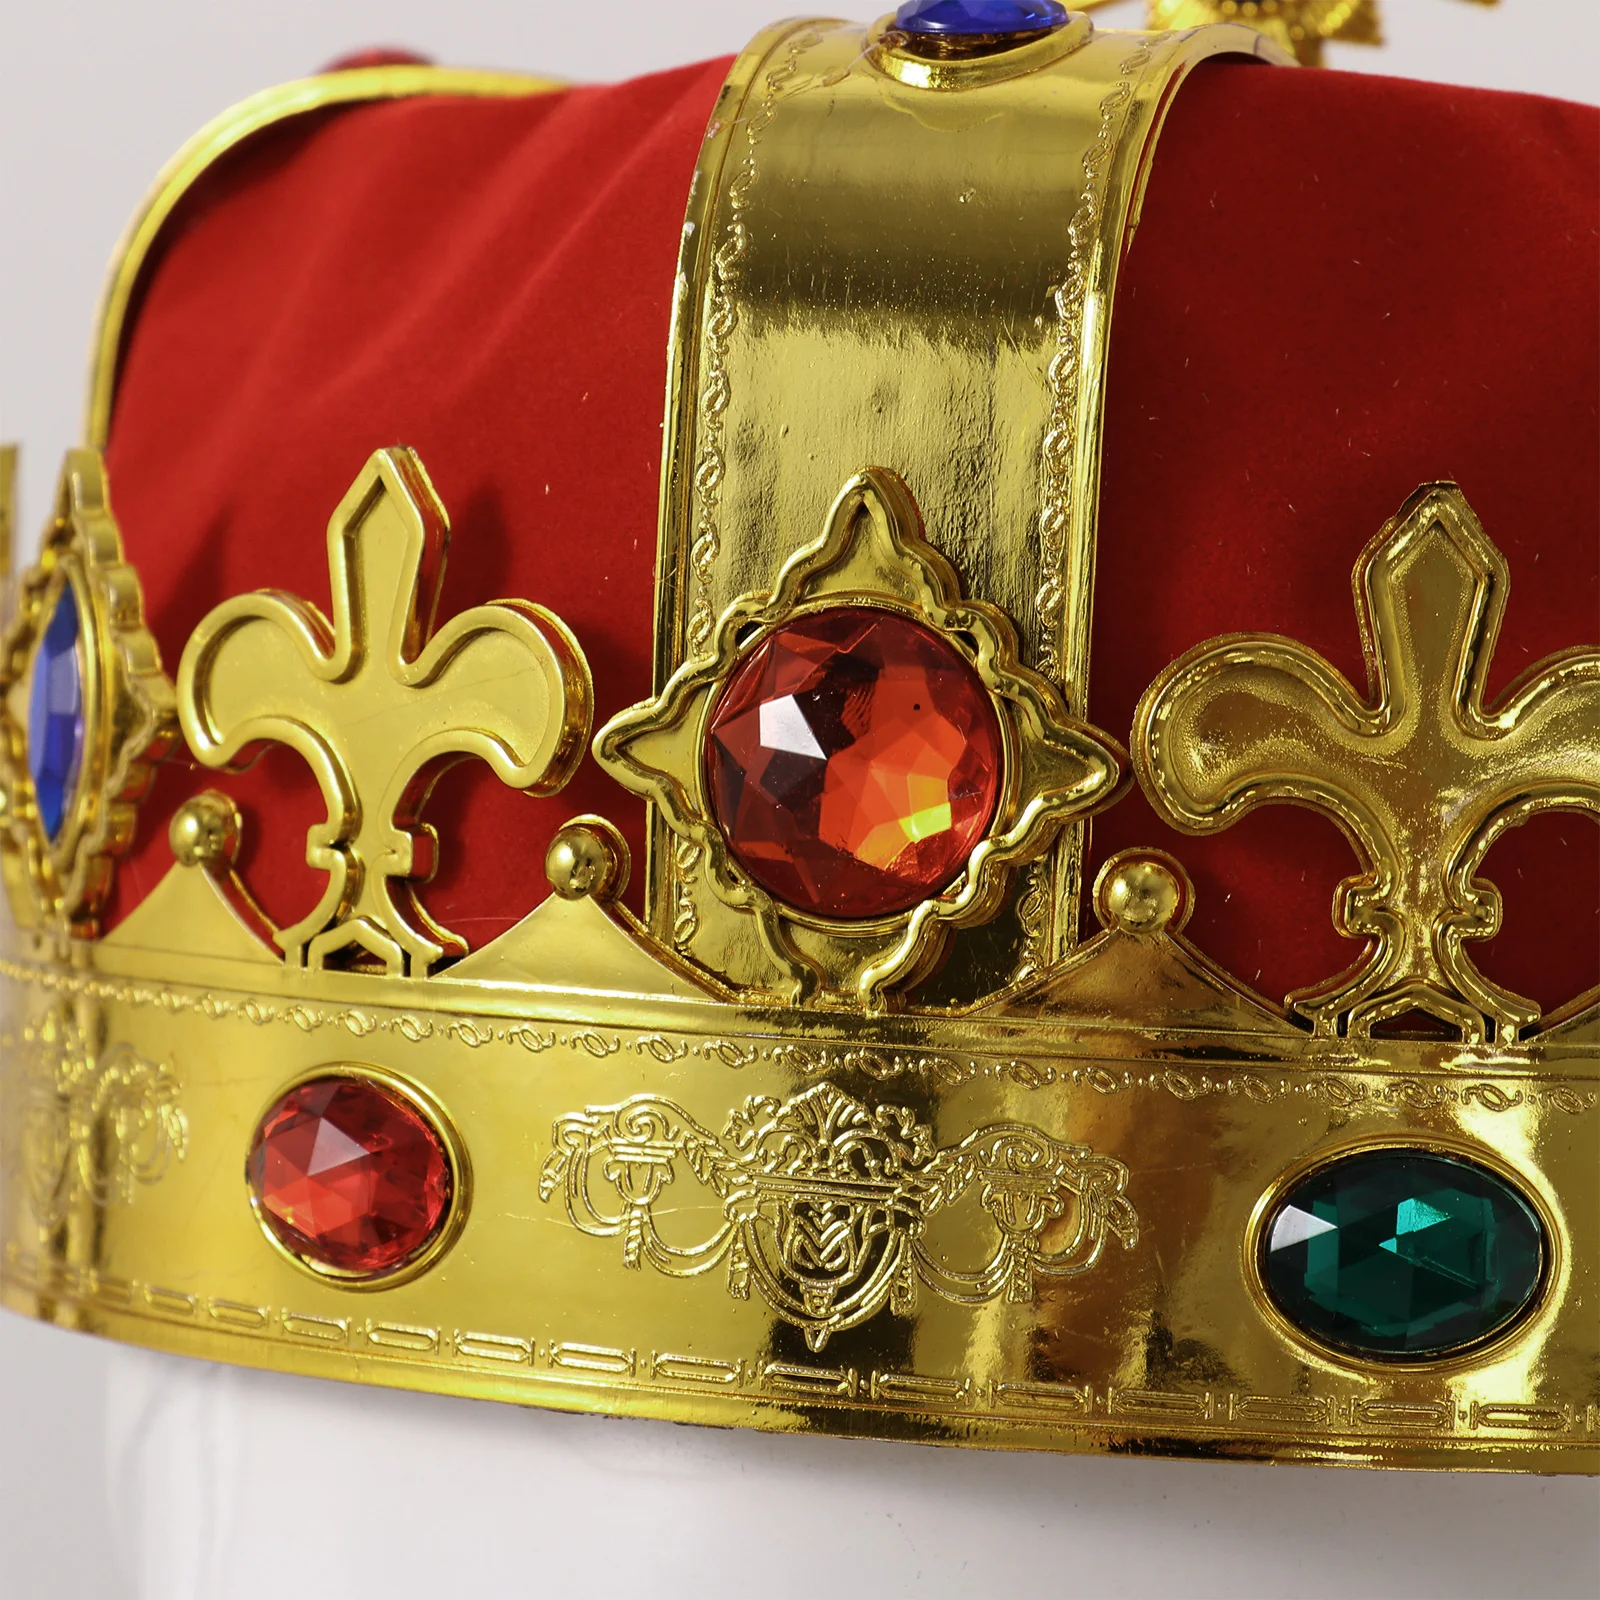 IMIKEYA Corona con Joyas de Royal King Queen Carnaval Cosplay Sombreros de Fiesta Accesorios de Vestir para Fiesta de Cumpleaños 